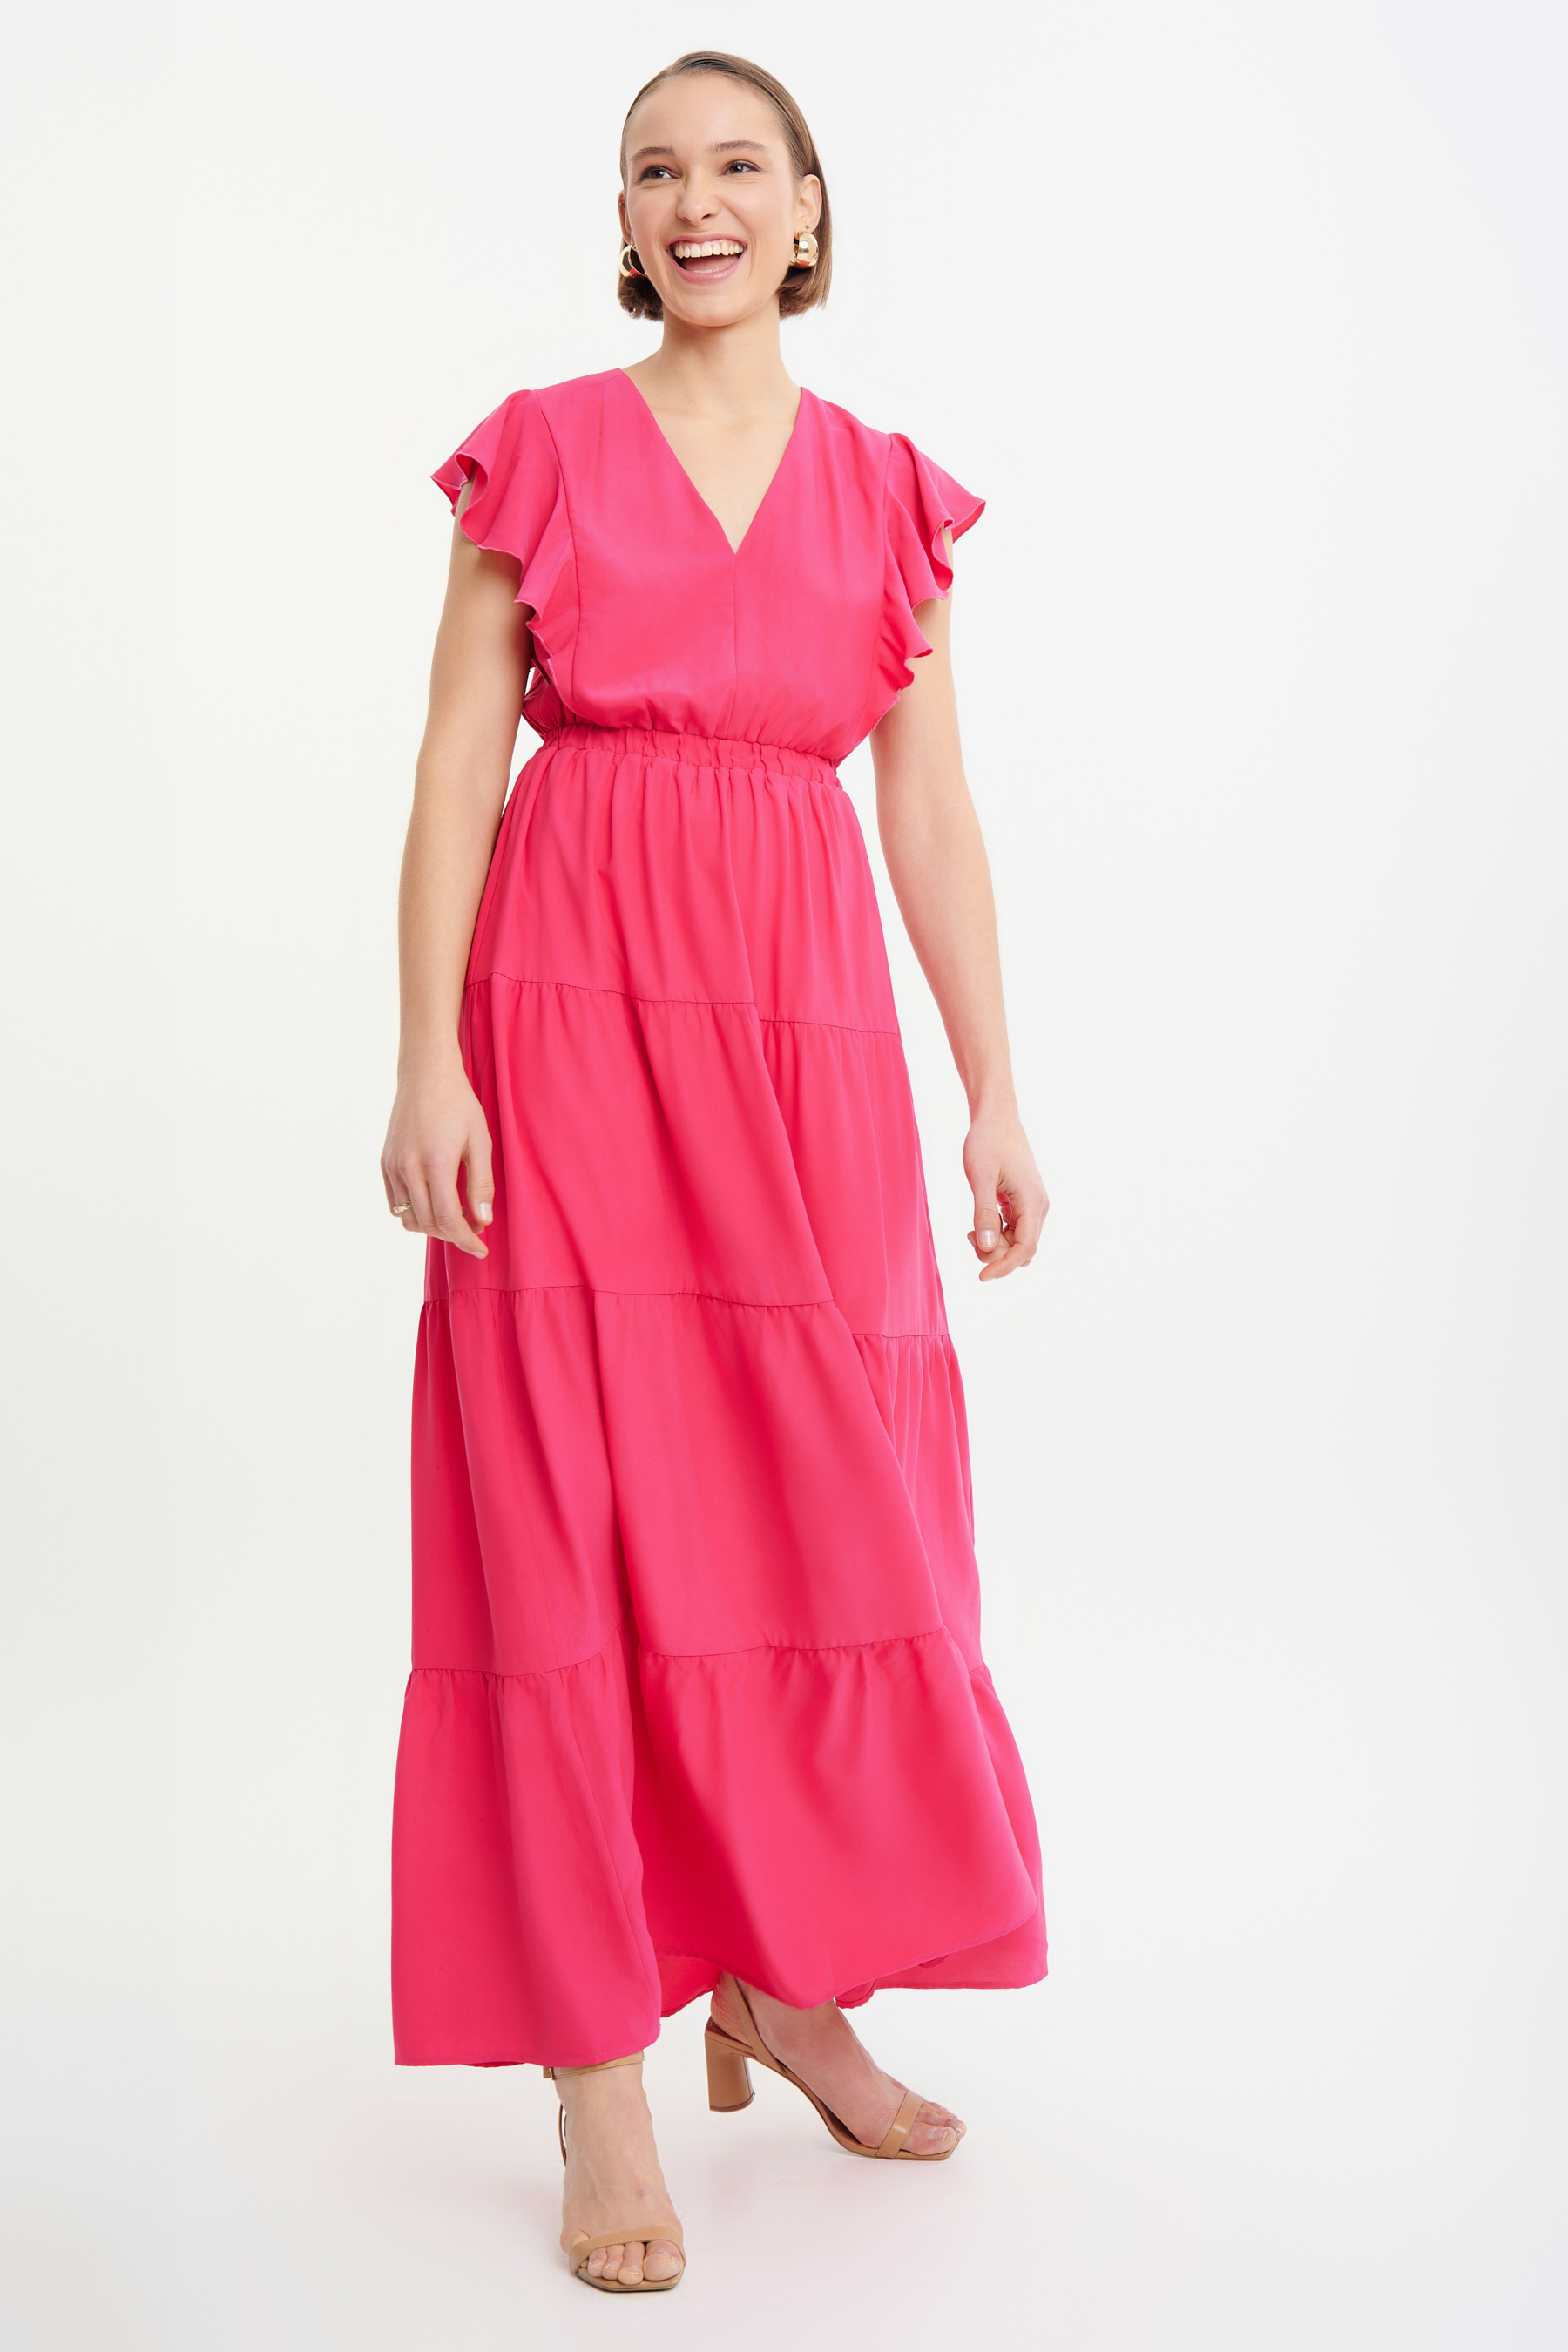 Różowa sukienka maxi z falbaną